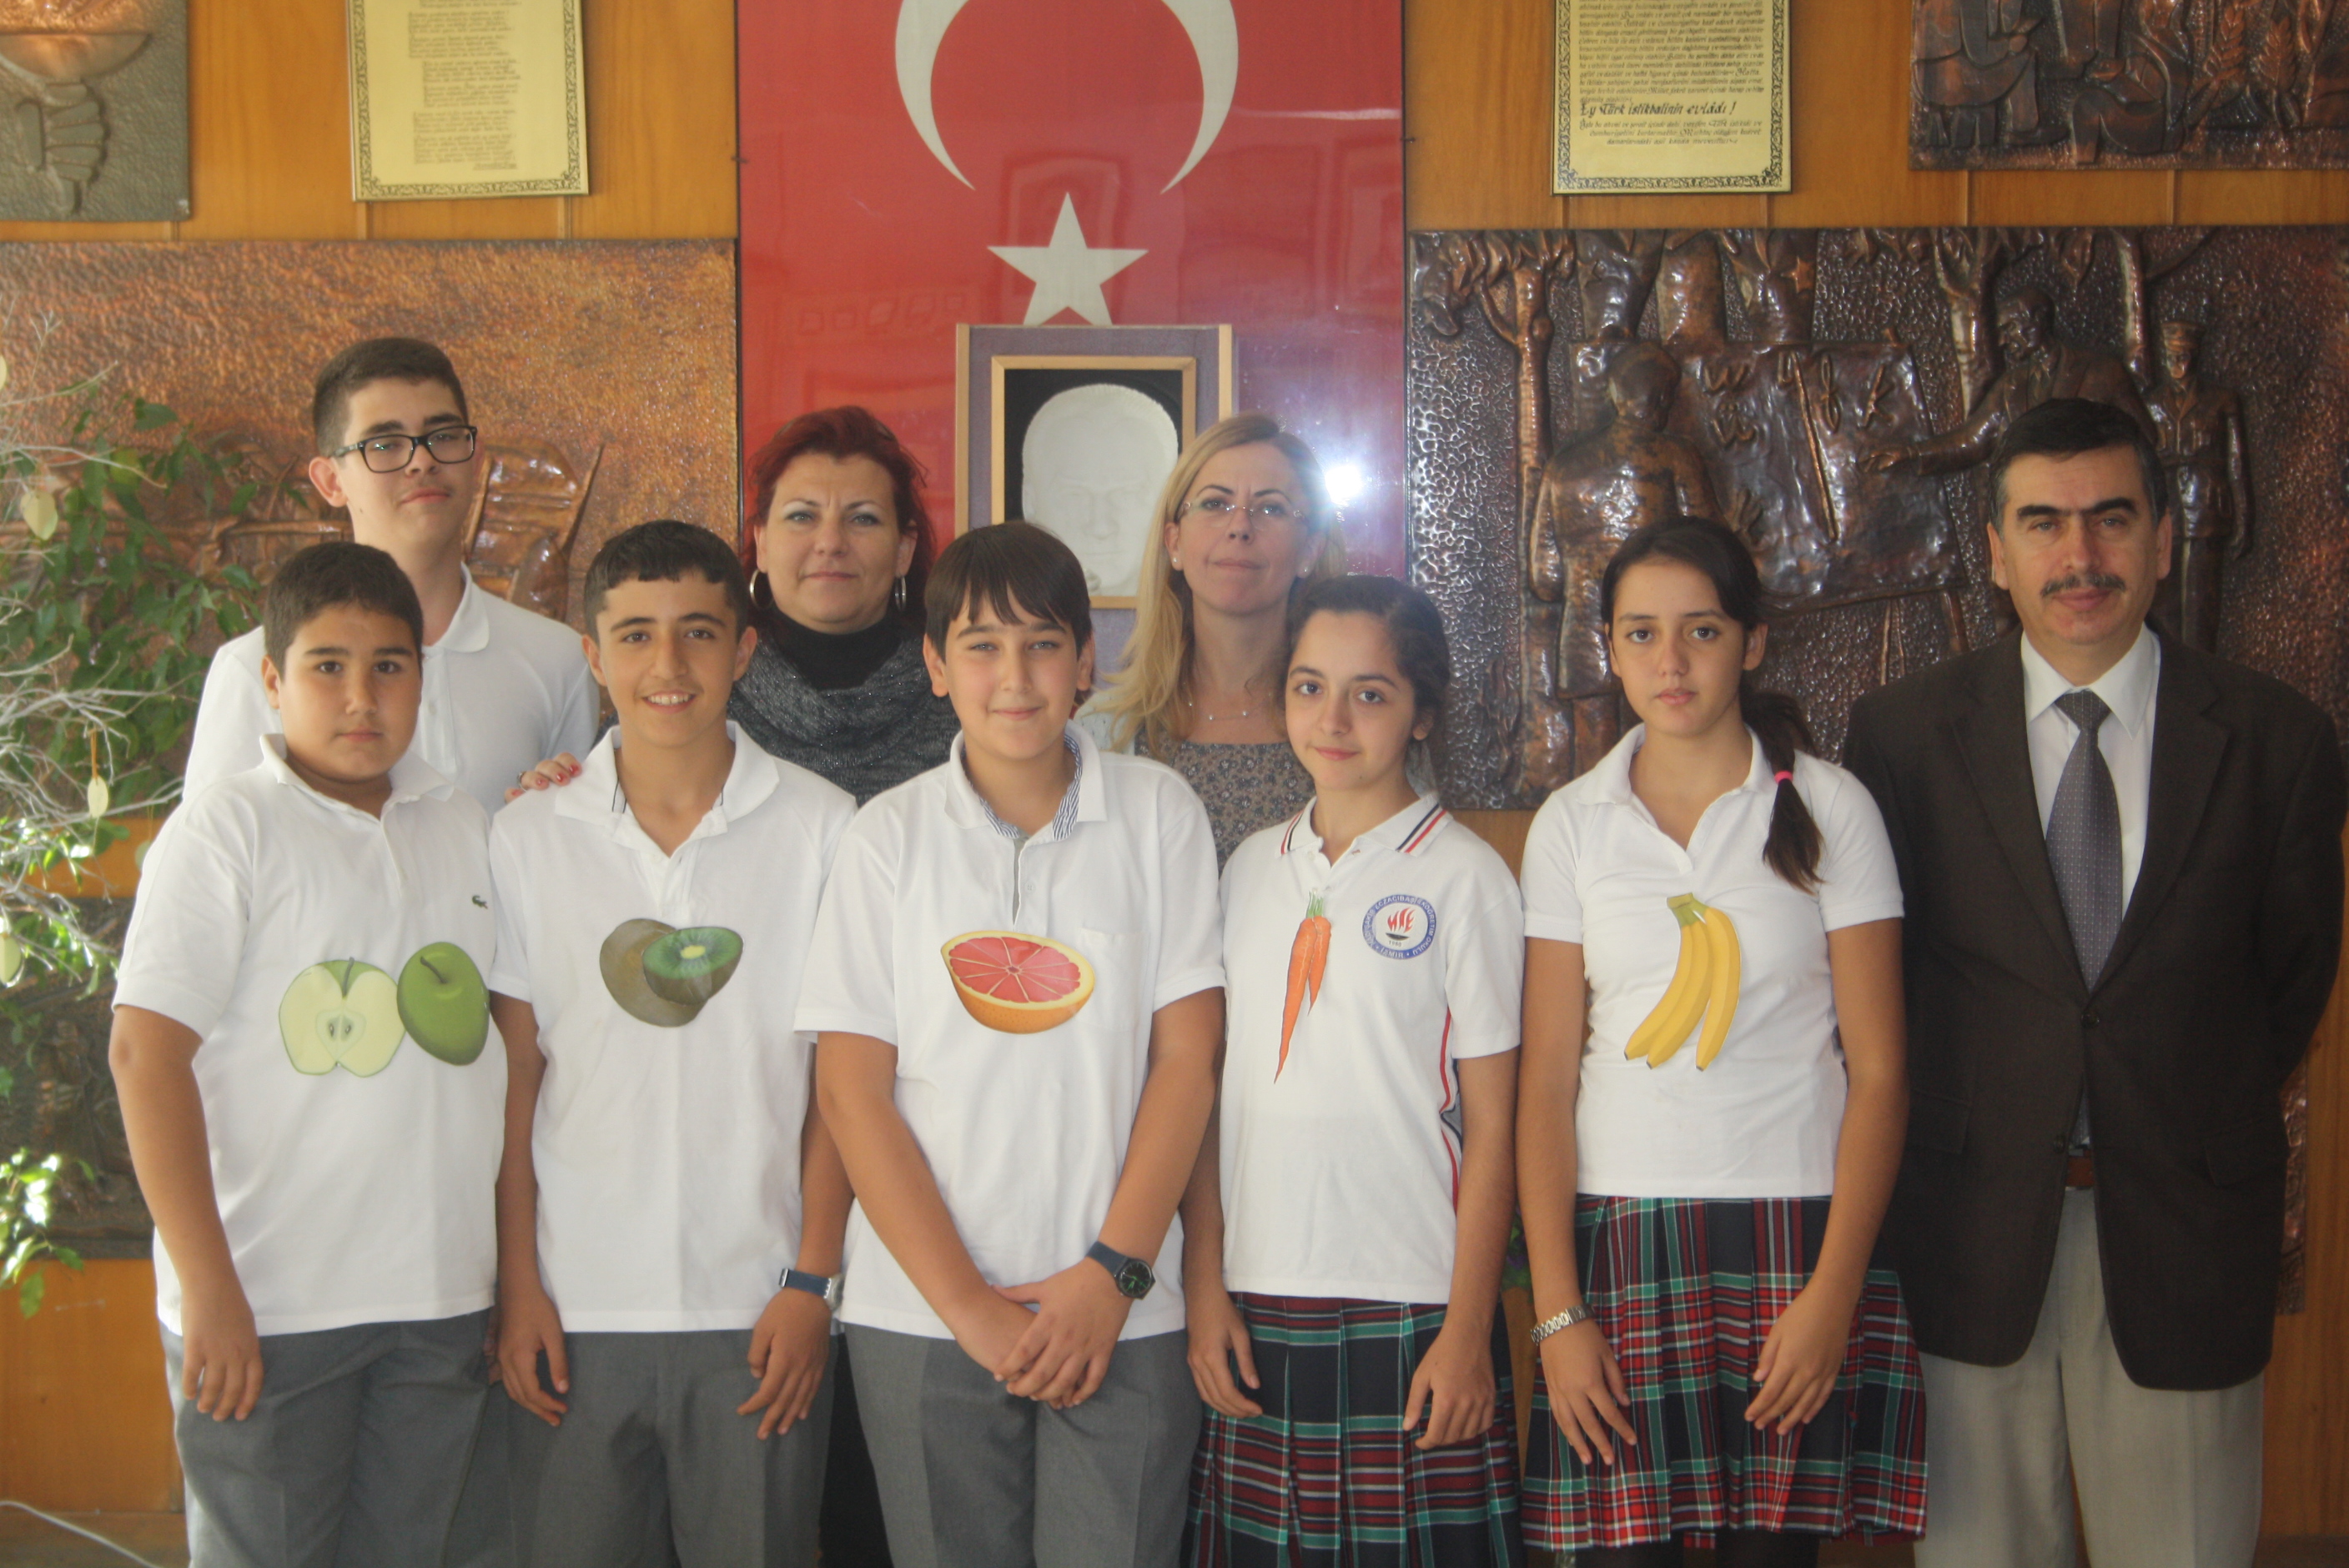 Bilinçli Gençler Derneği - Türkiye Bilinçli Gençlik Projesi - "SAĞLIK İÇİN EL ELE" - Hacı Şakir Eczacıbaşı İlköğretim Okulu - İZMİR